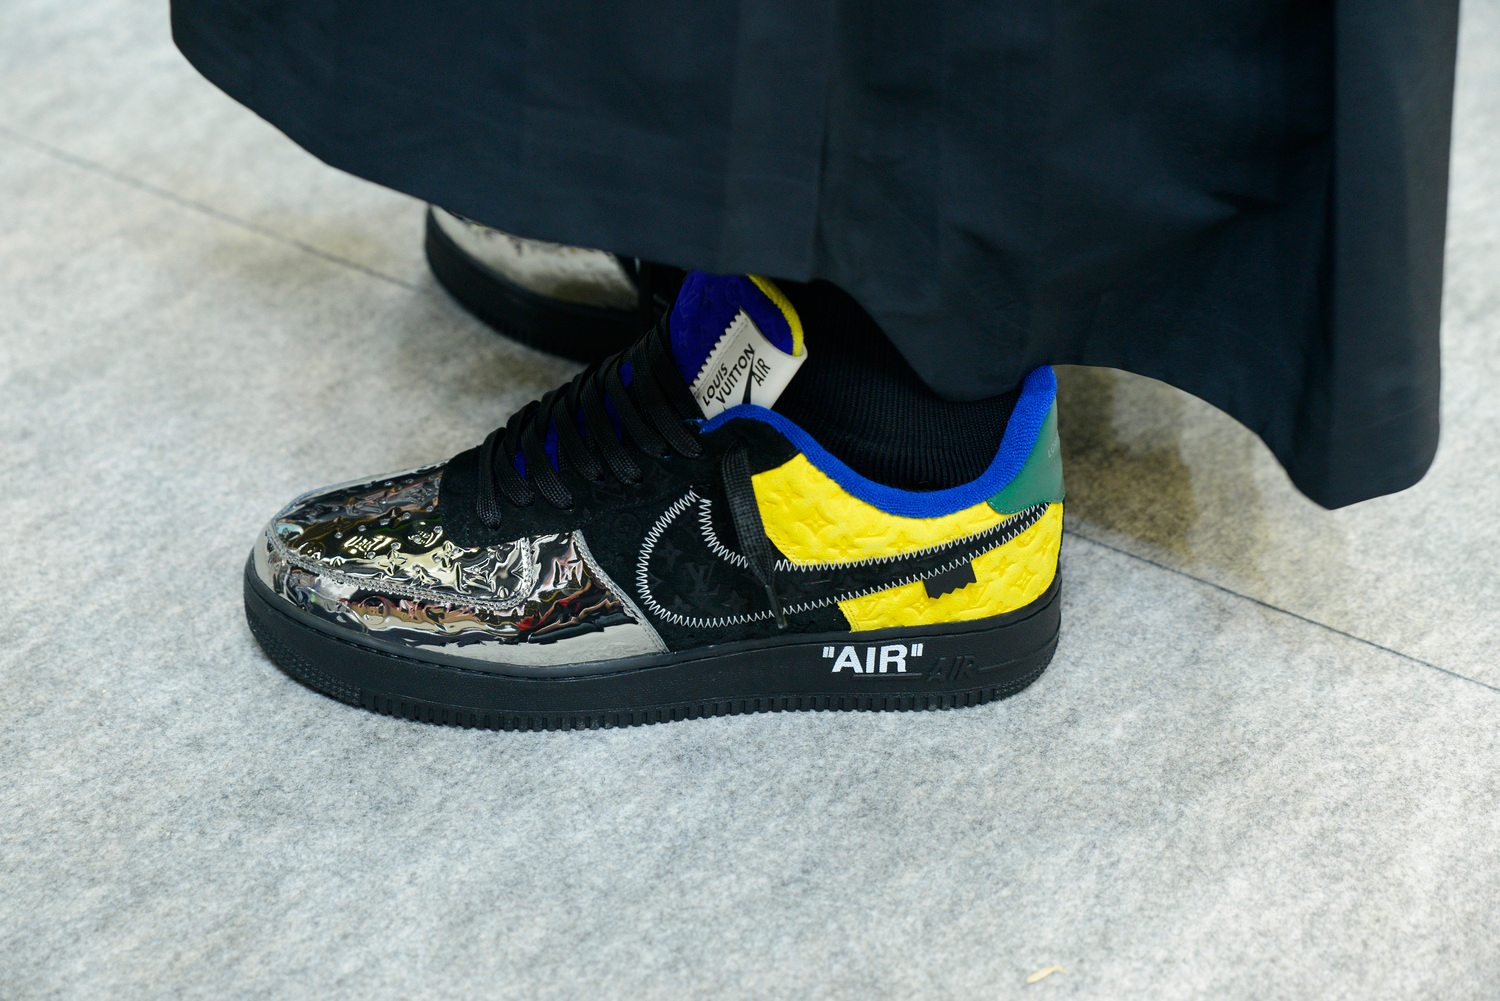 Louis Vuitton x Nike : à quoi ressemblent les sneakers de cette collaboration exclusive?